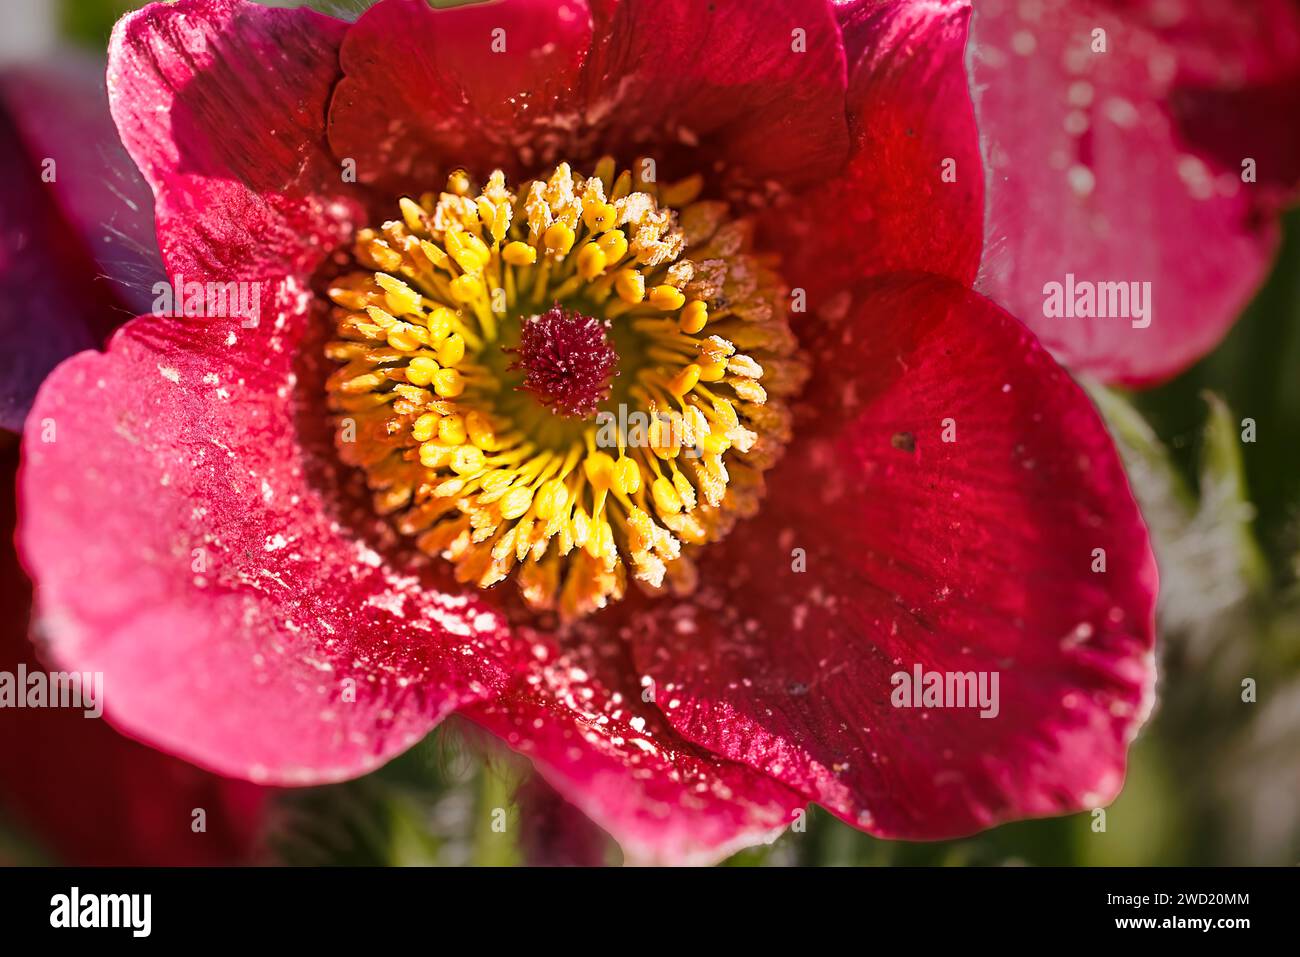 pulsatilla flower with pollen on stamens Stock Photo